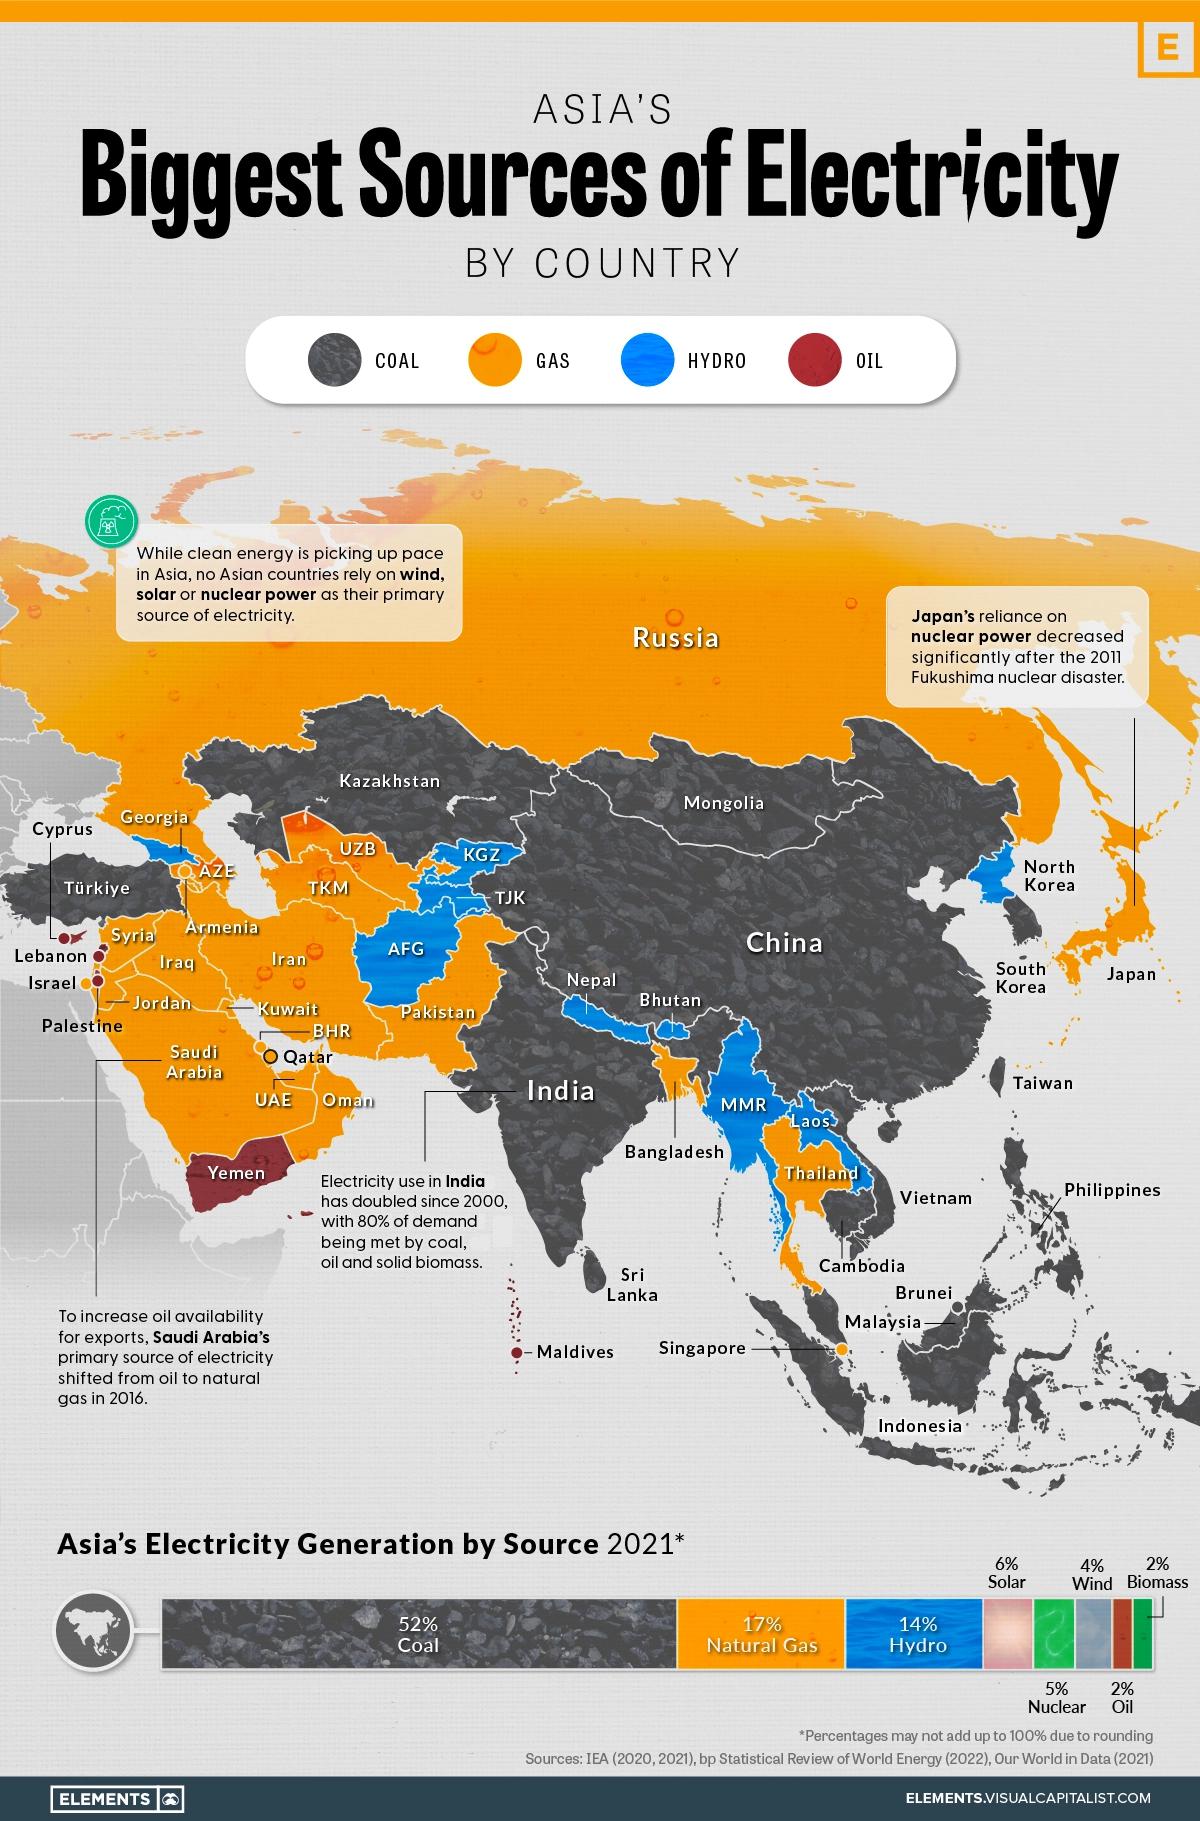 Największe źródła energii elektrycznej w Azji według krajów, 2021